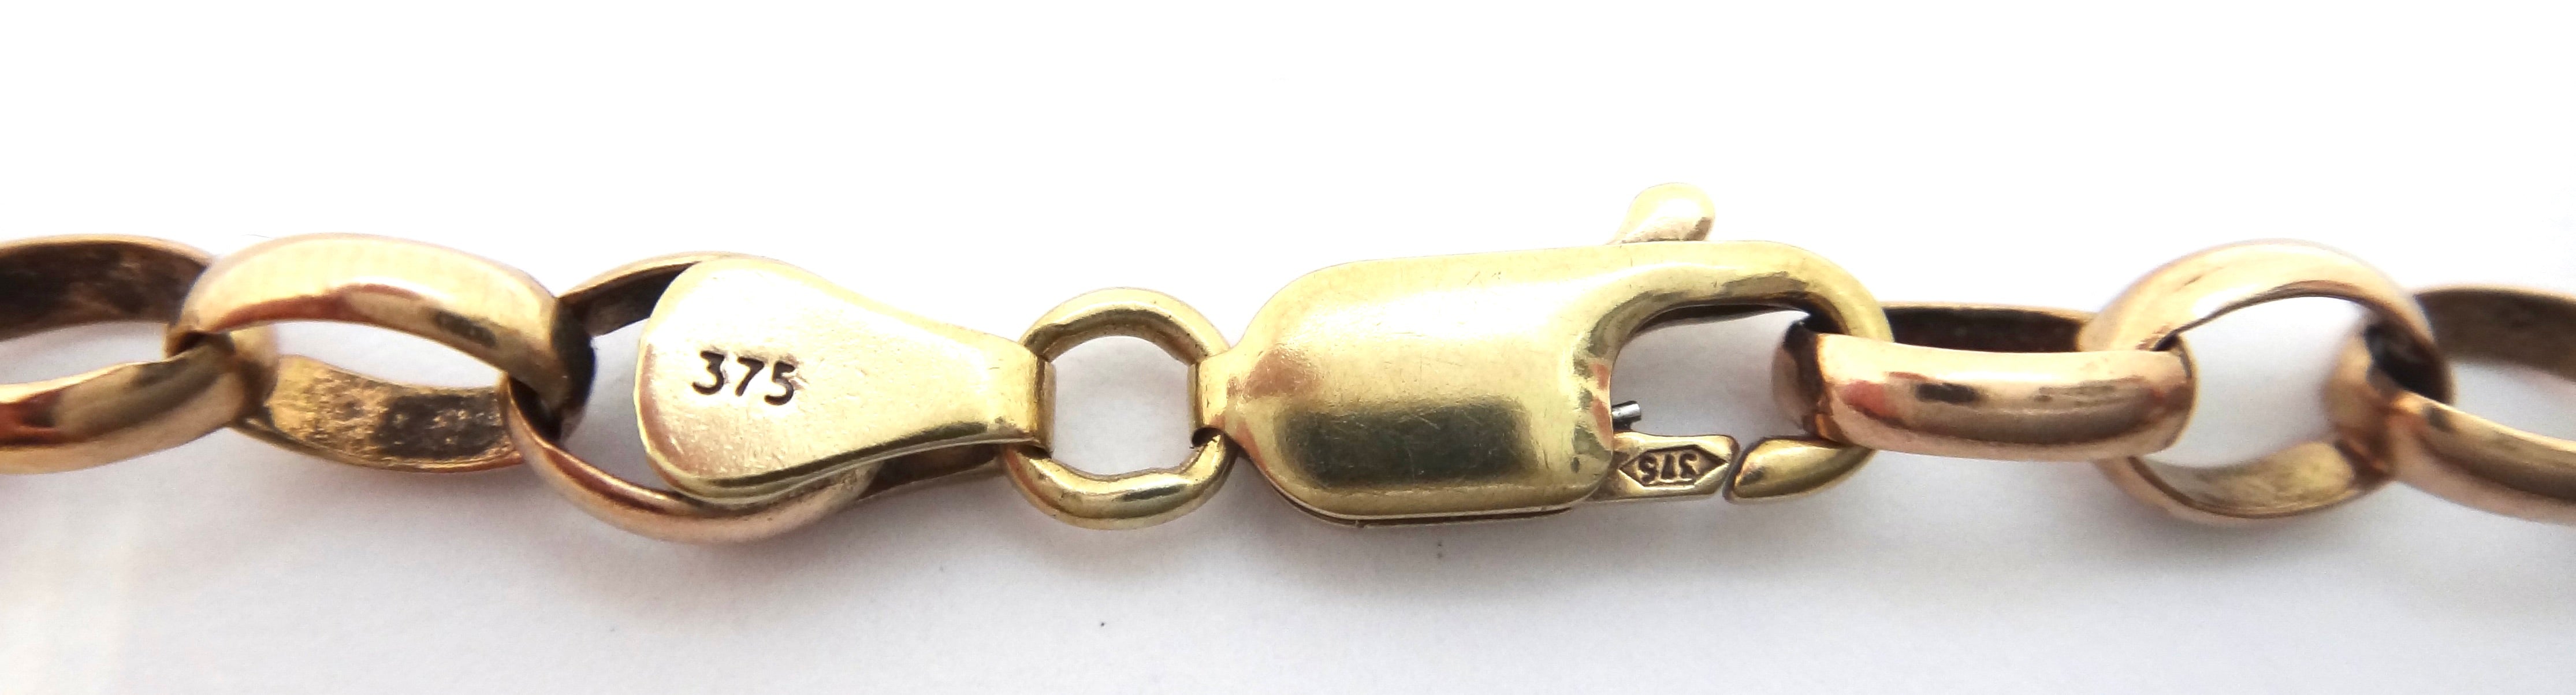 9ct Rose GOLD Belcher Link Bracelet